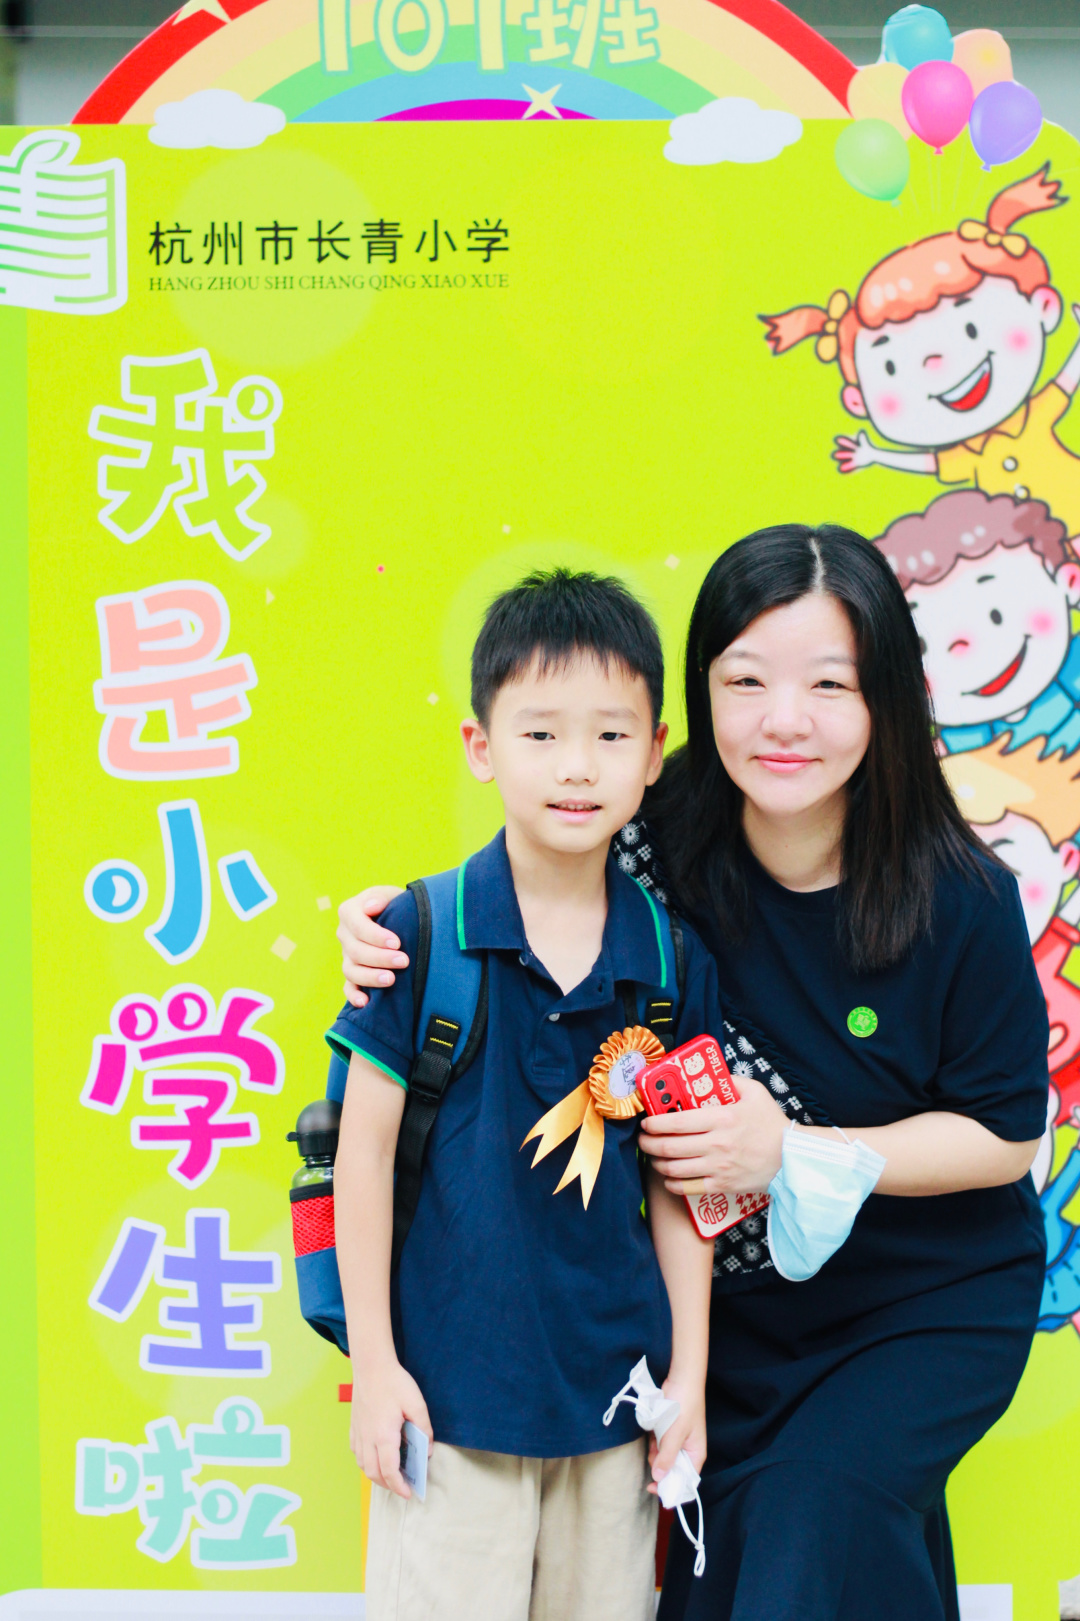 【特别关注】杭州市长青小学2021年适龄儿童入学现场核验信息通告